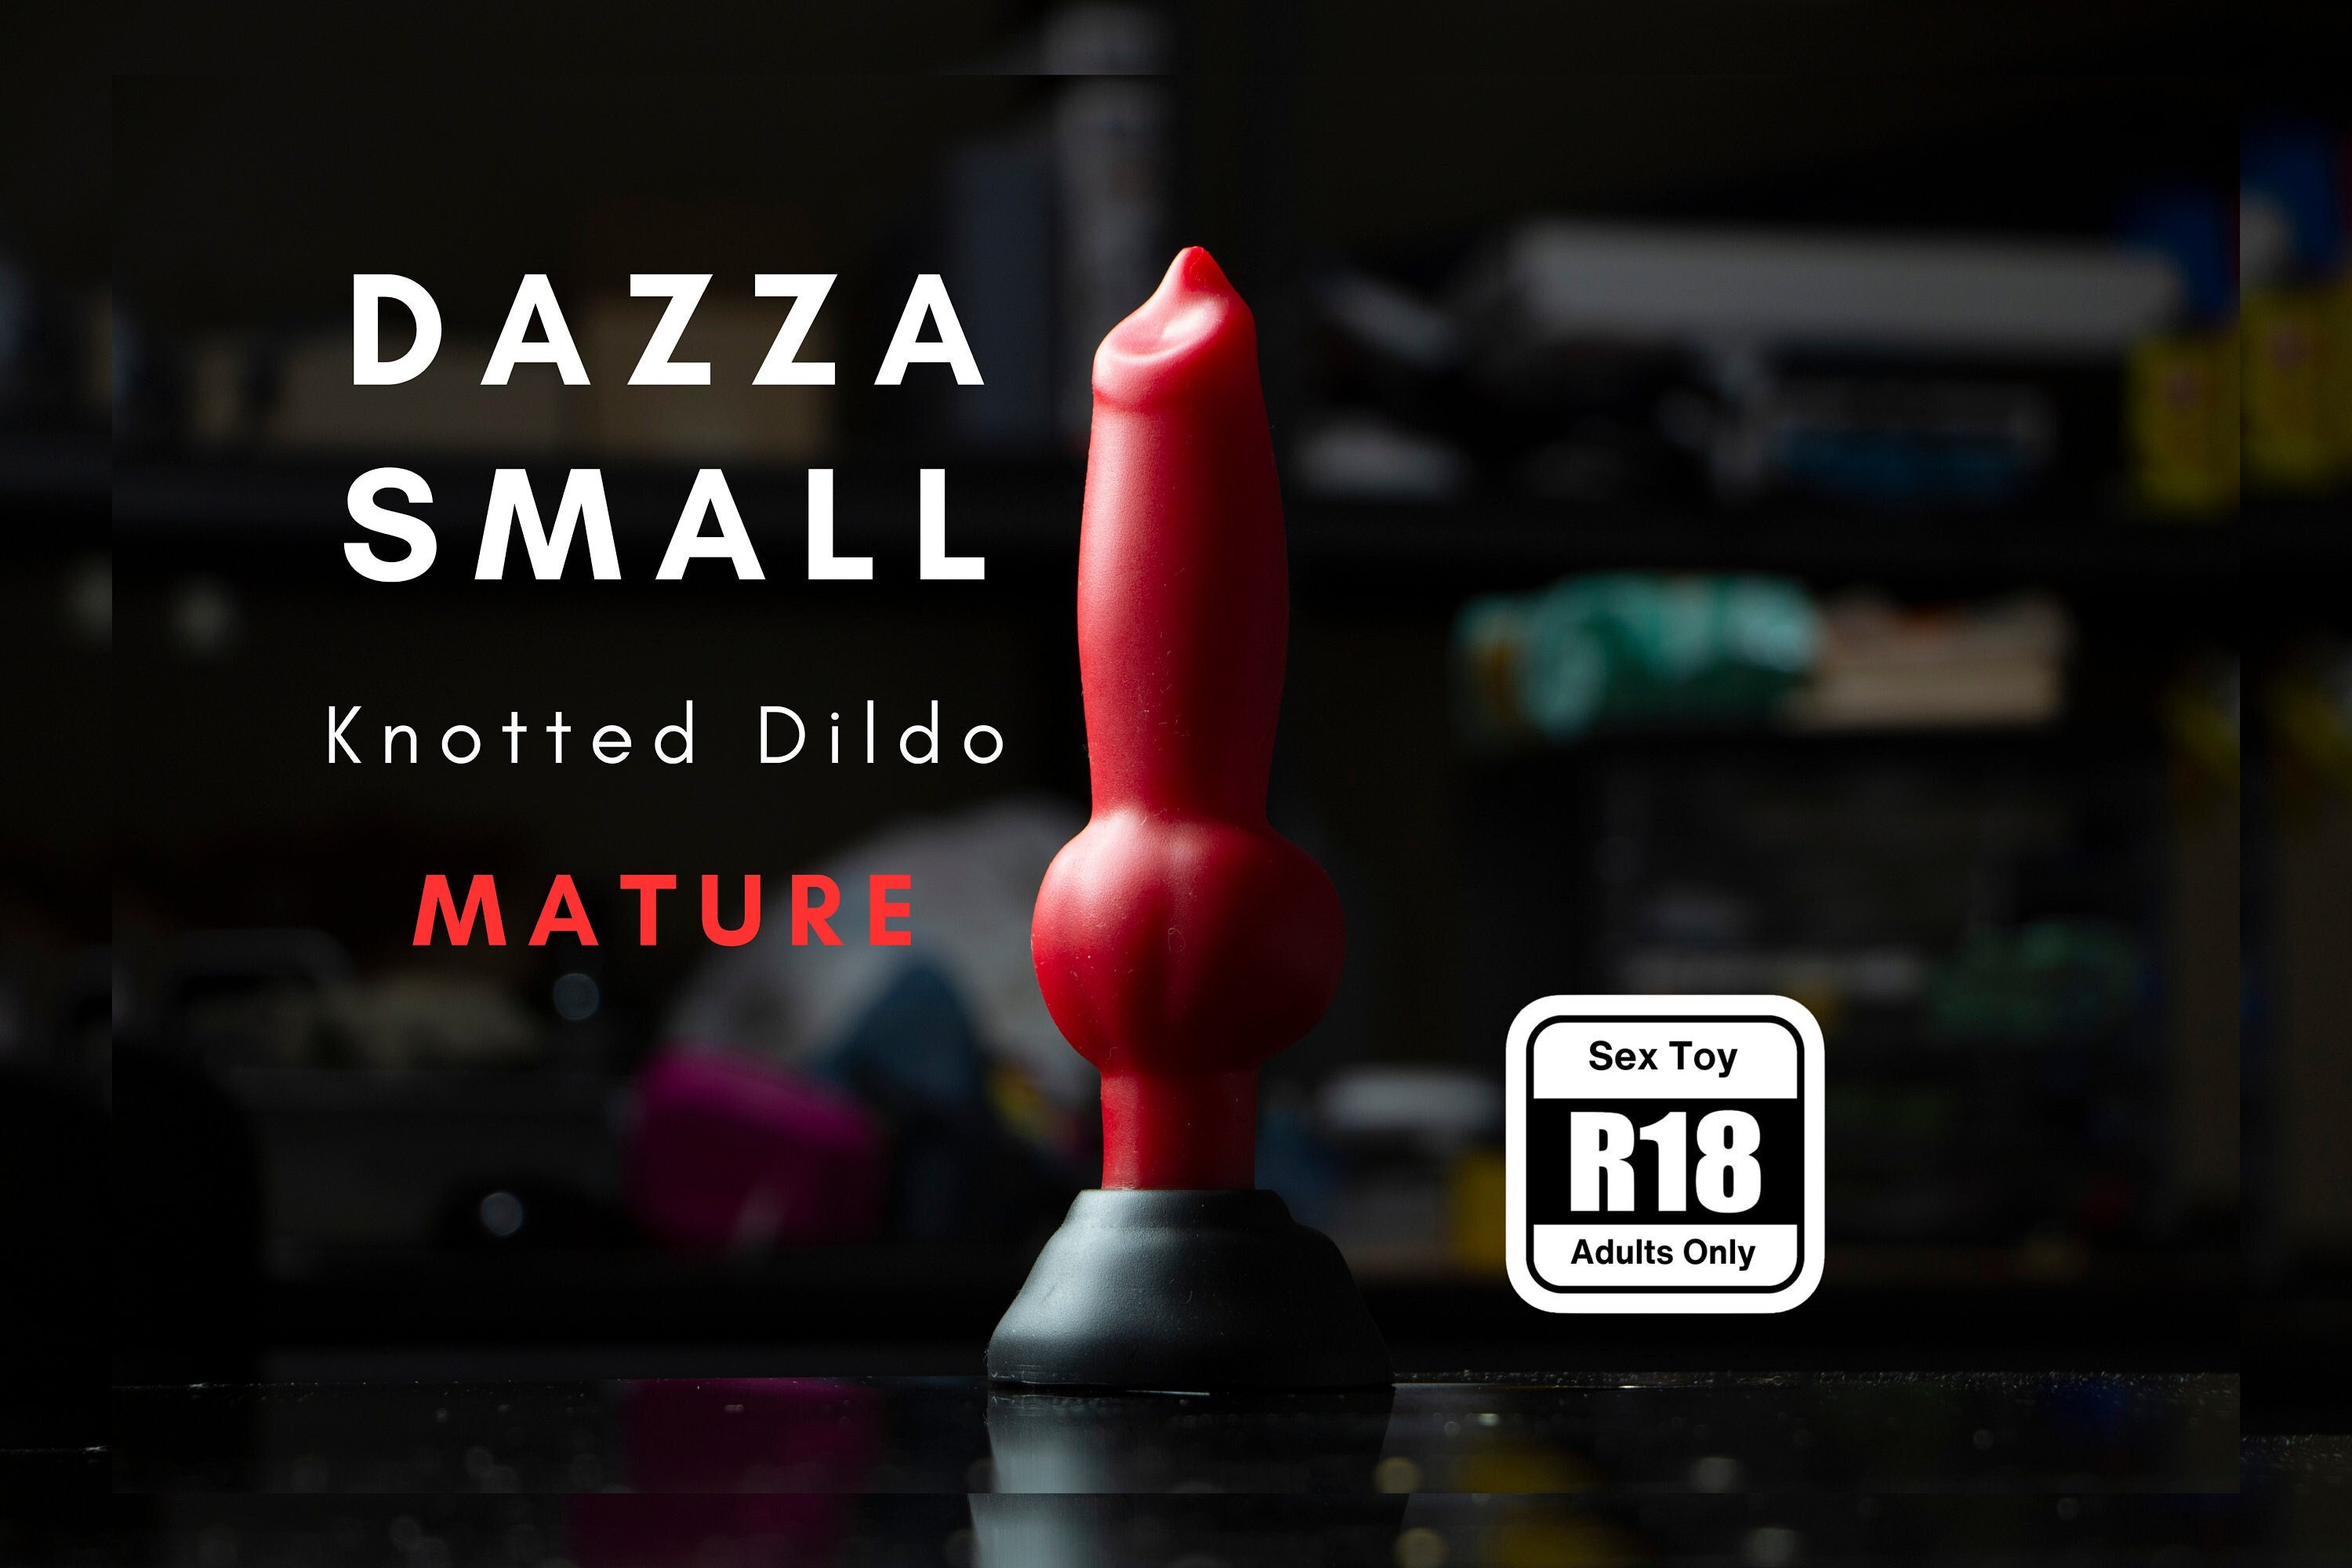 Small Dazza Custom Handmade Silicone Knotted Dildo Mature Body